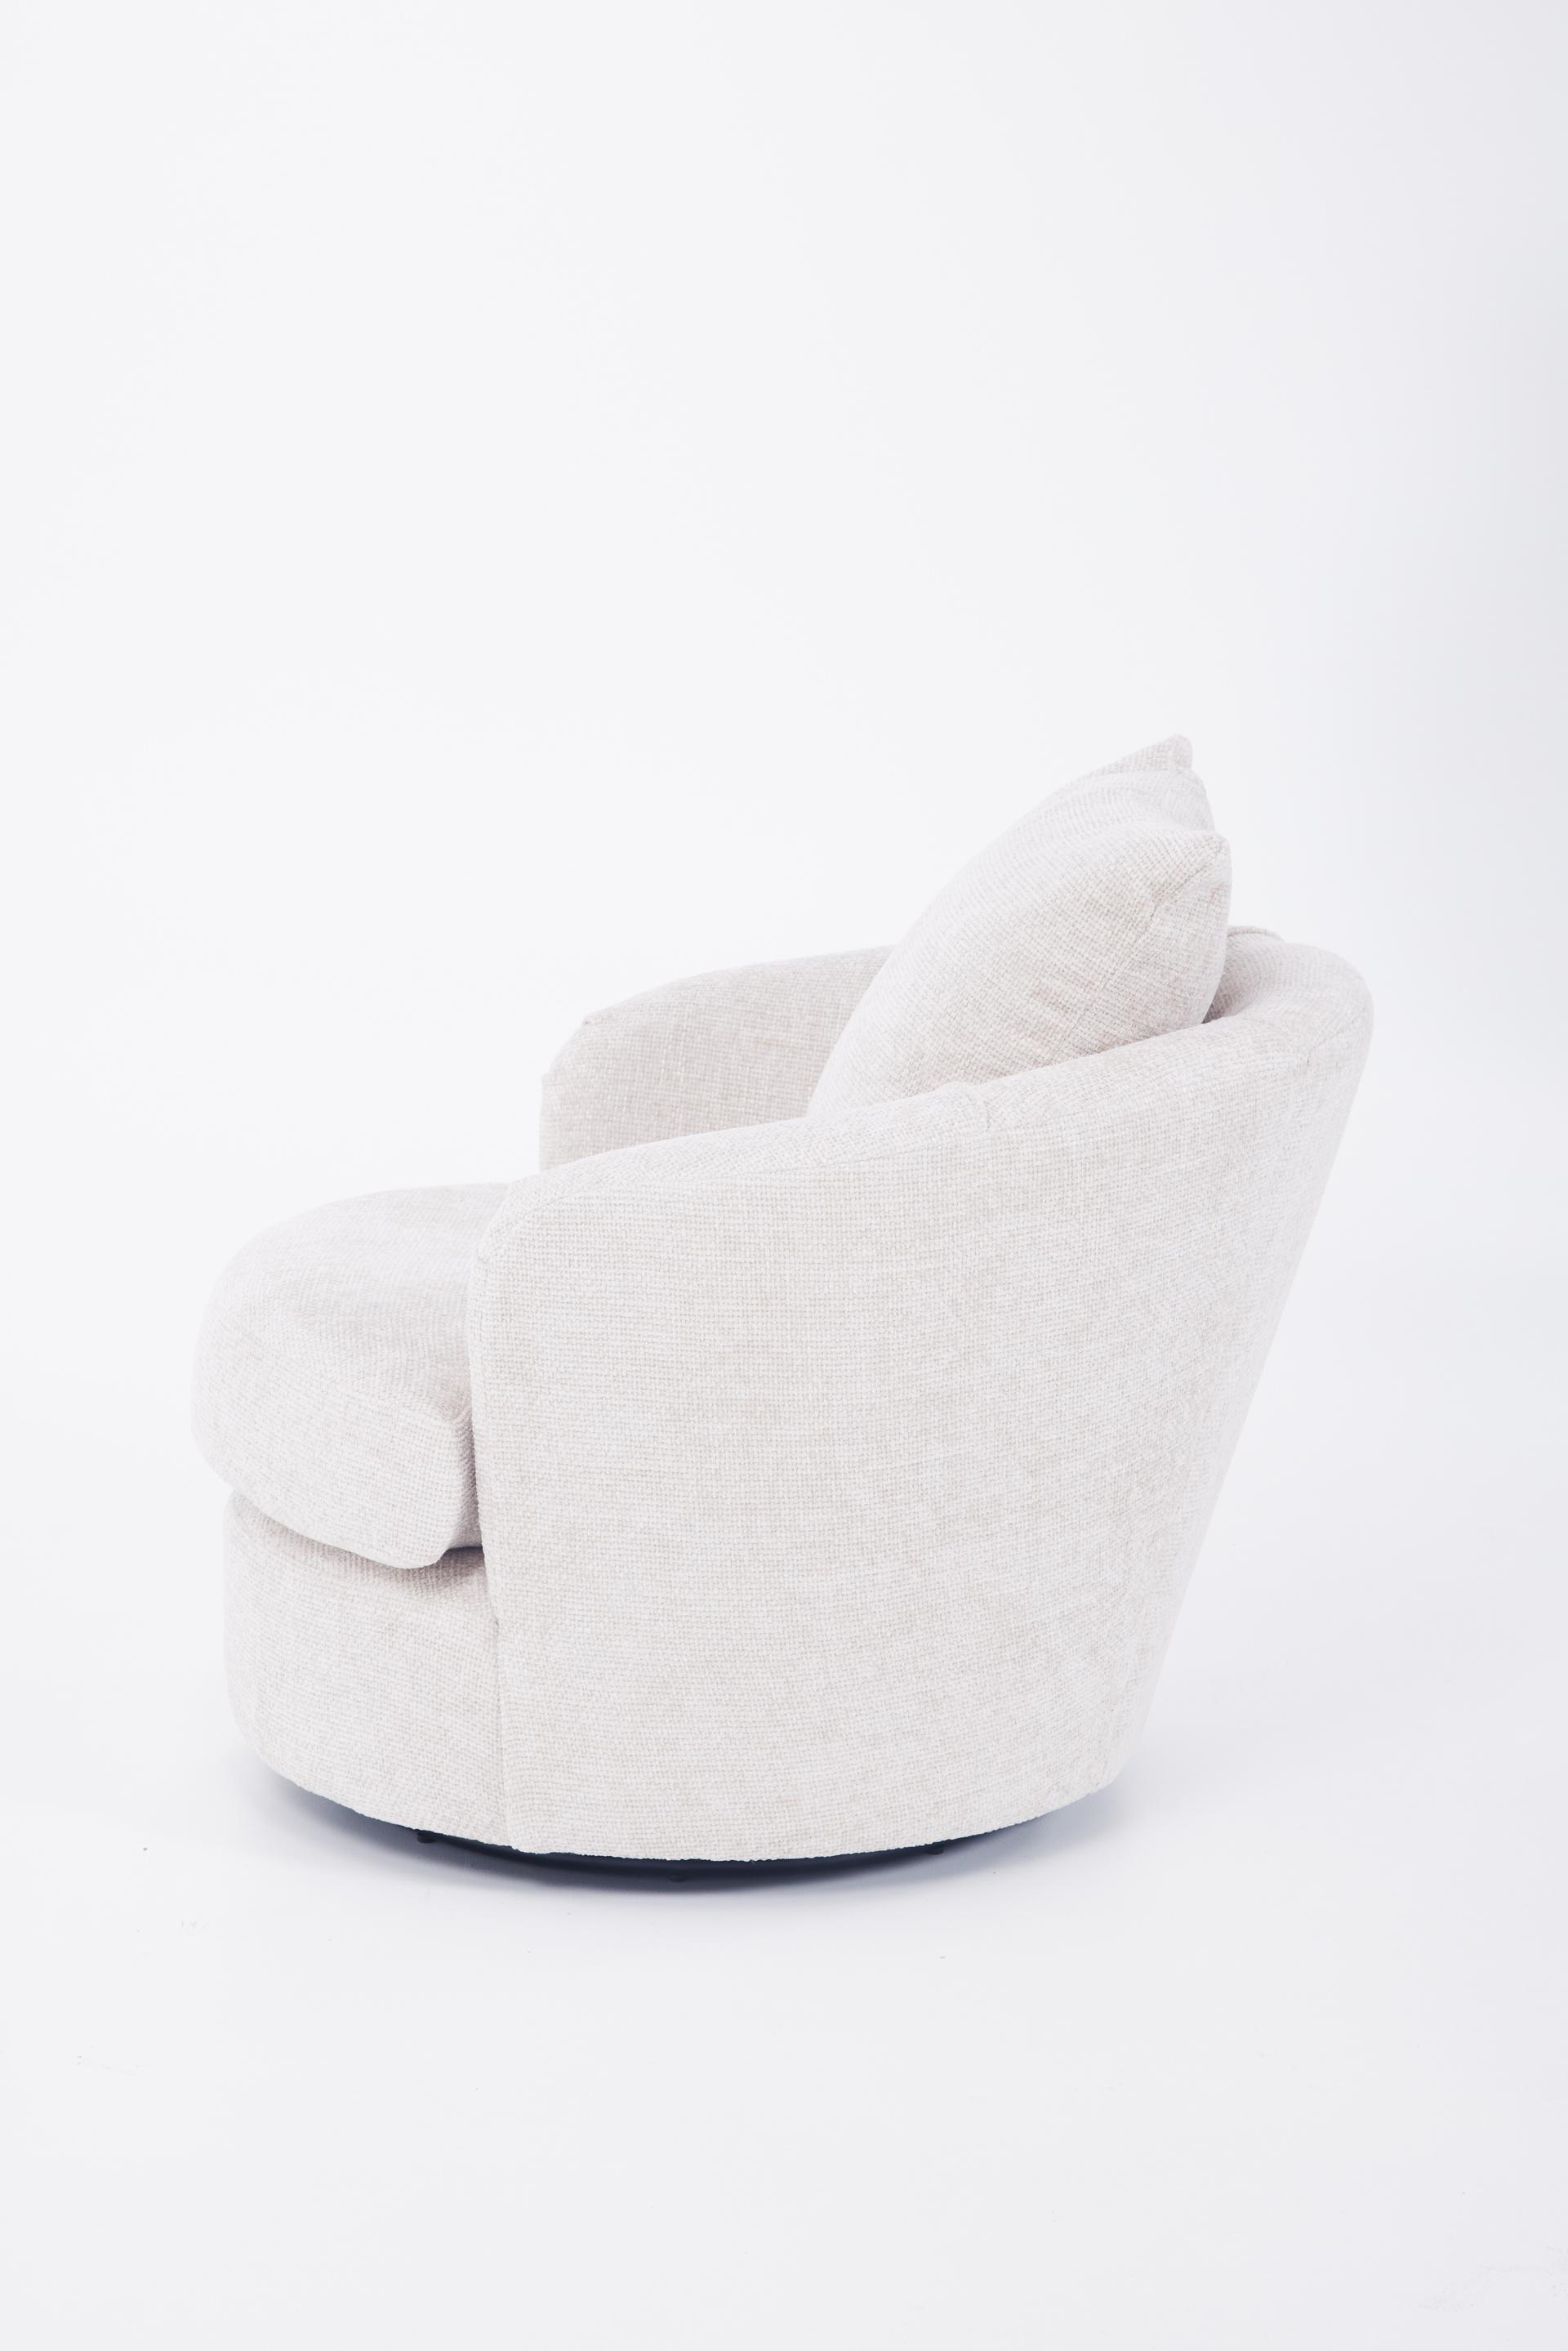 Girona Mini Swivel Chair